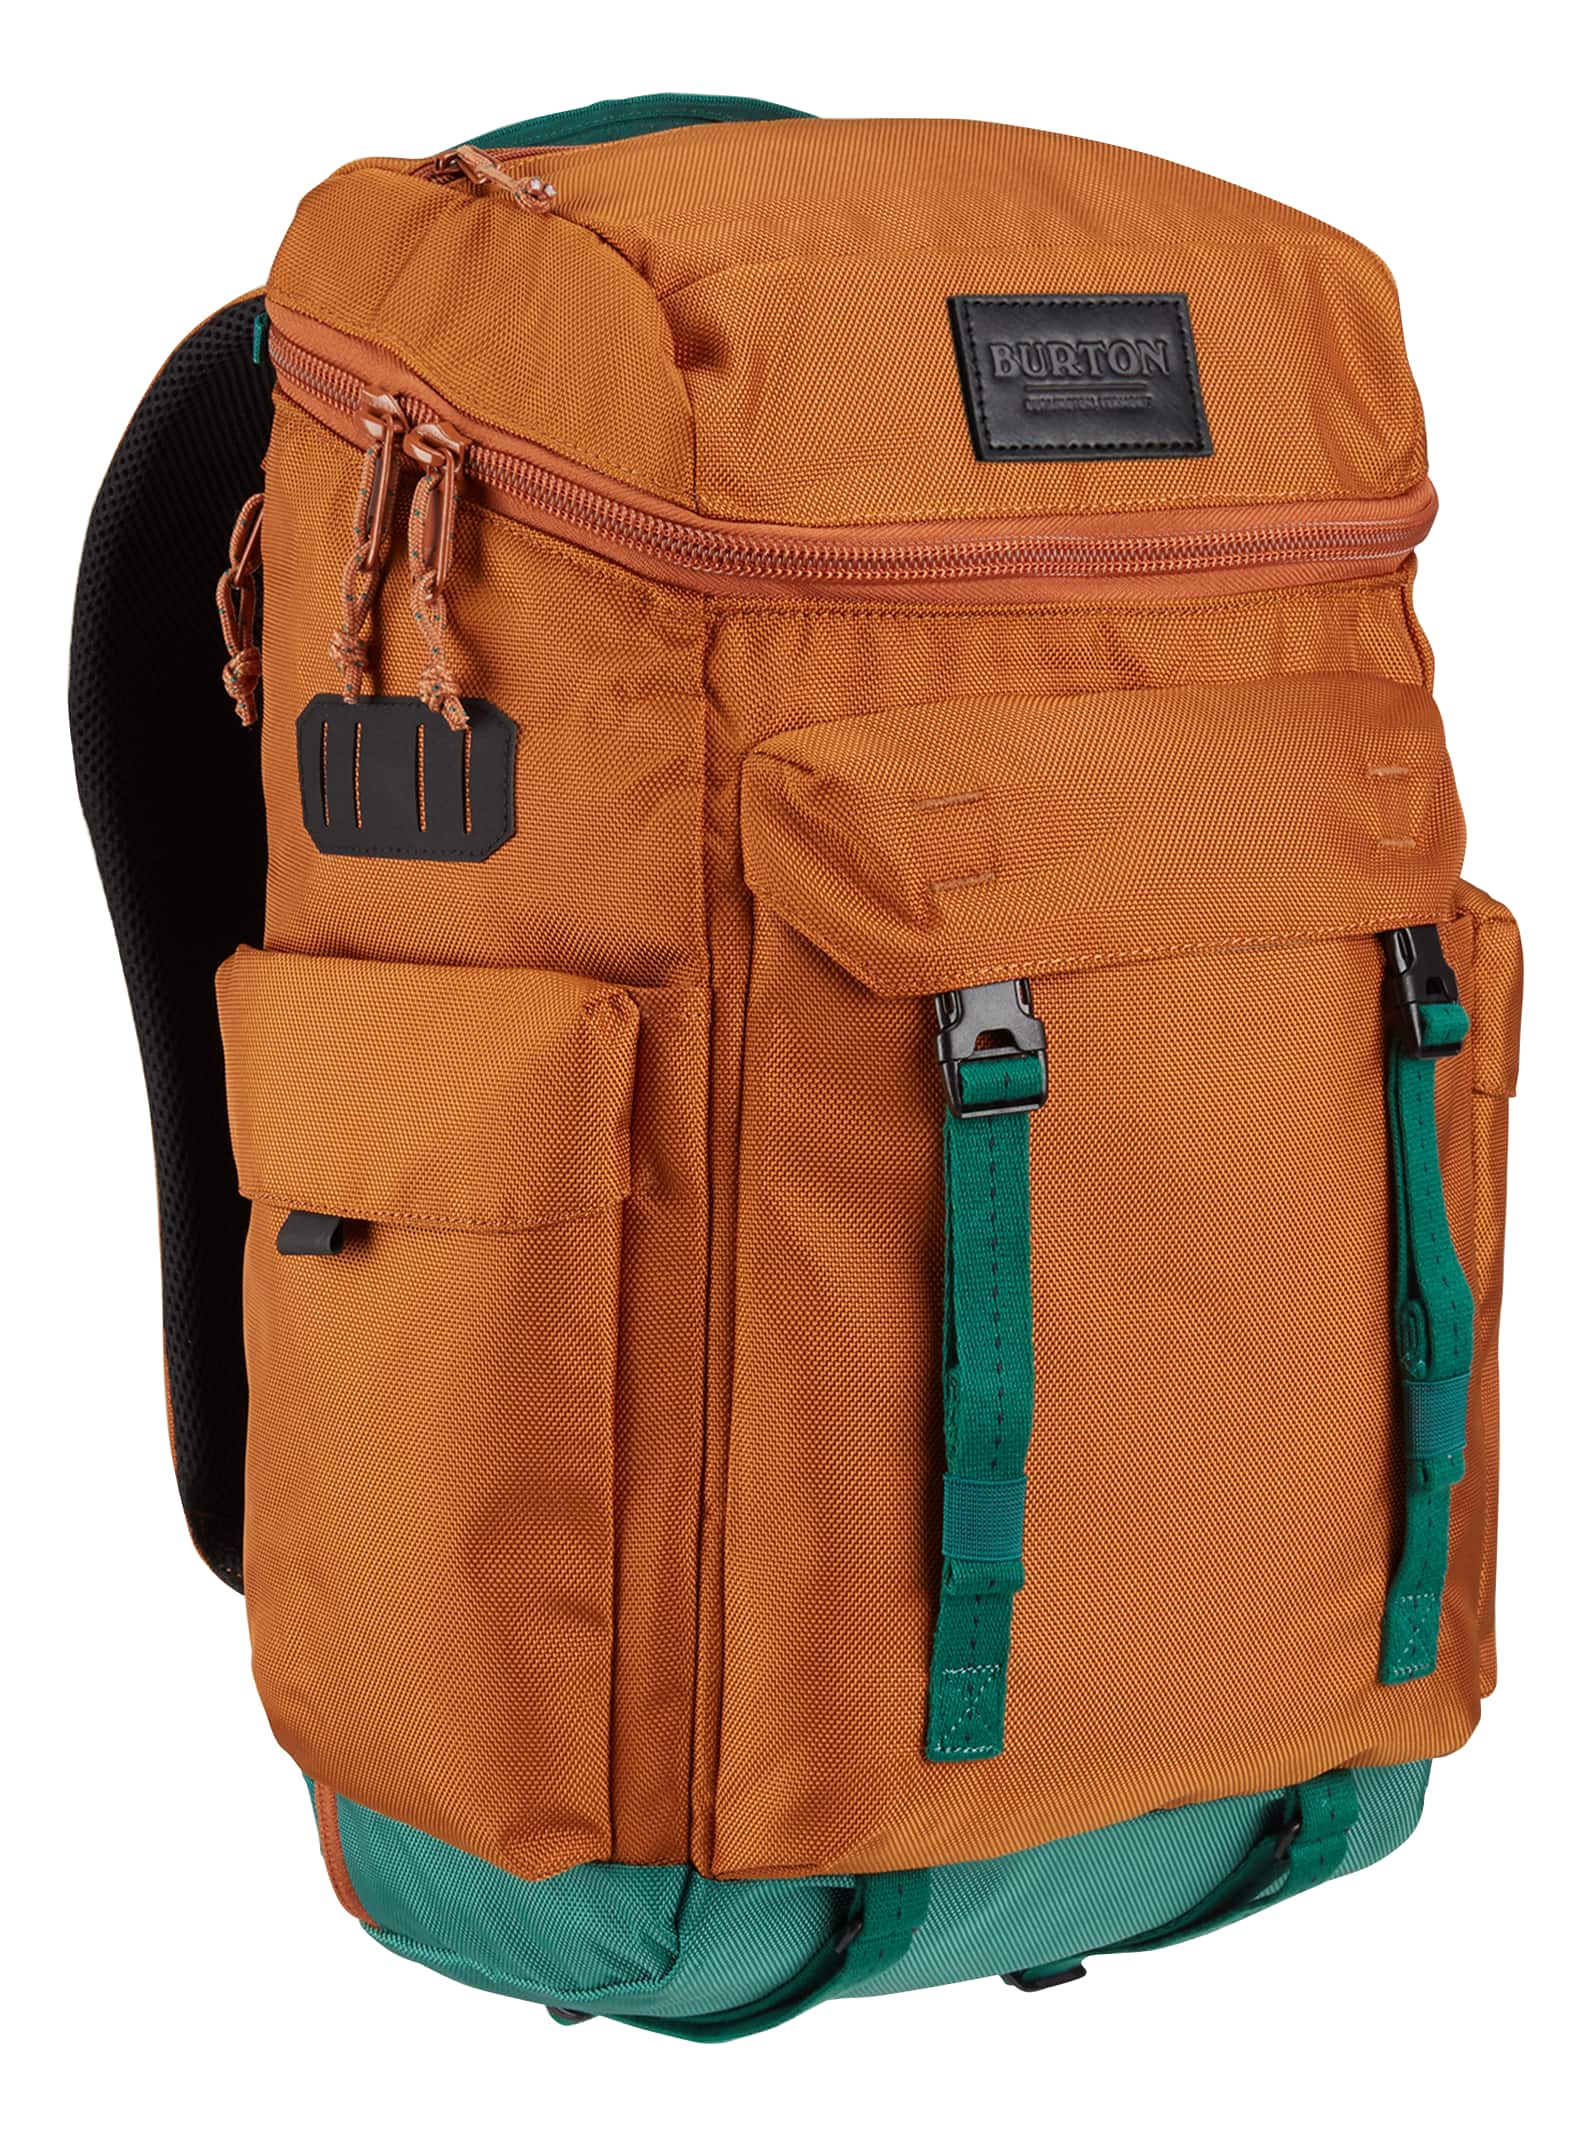 Burton Annex Backpack Rucksack 28 Liter 2020 orange/gruen 